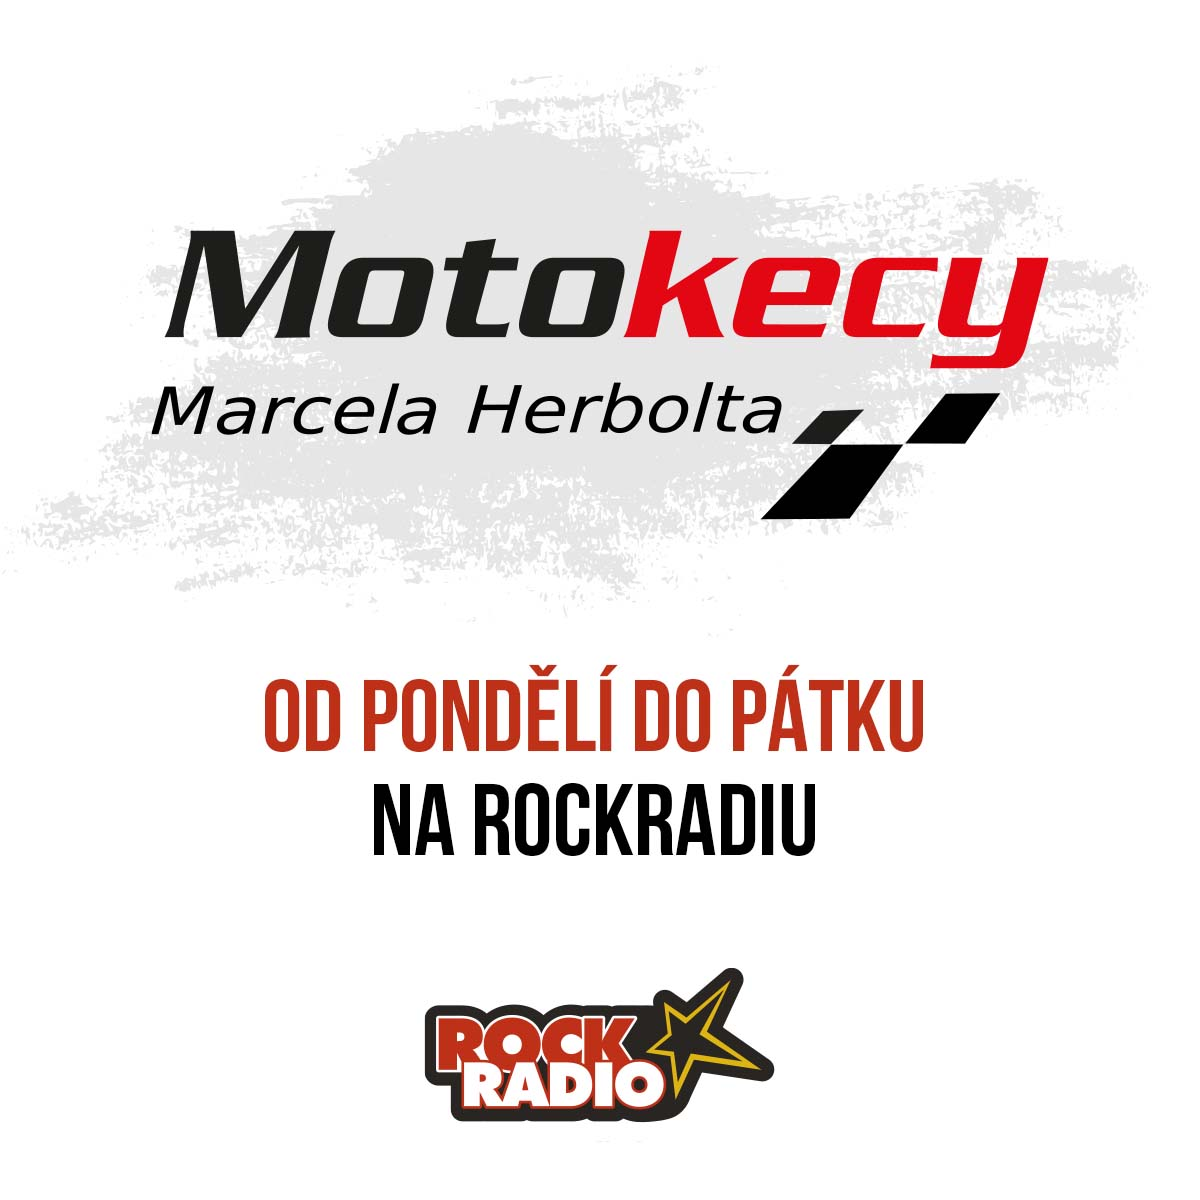 Motokecy Marcela Herbolta na úterý 17. října